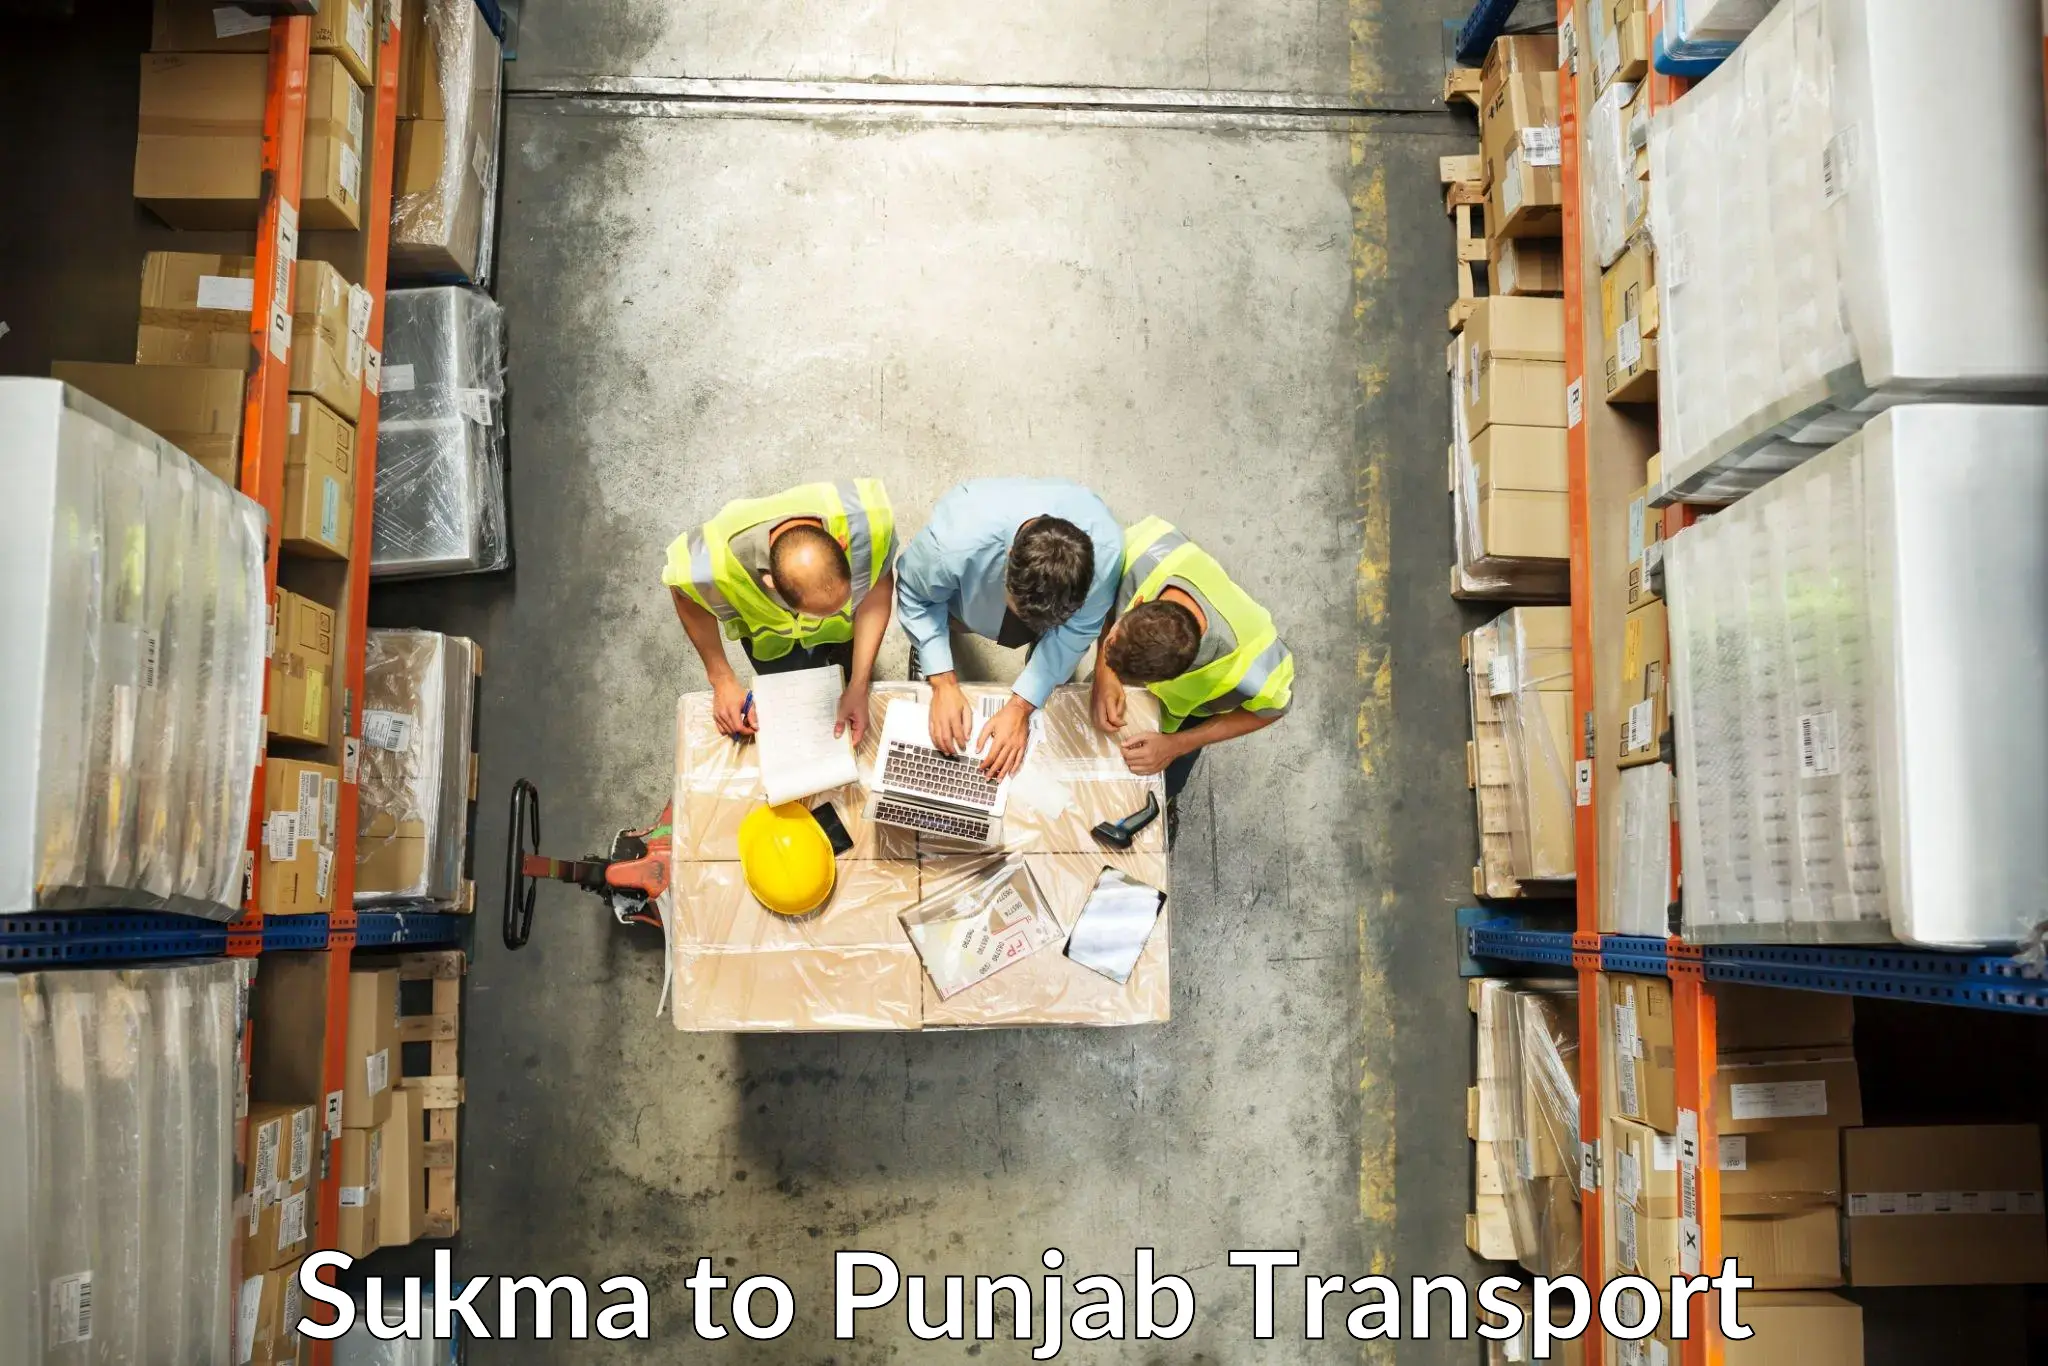 Shipping partner Sukma to Punjab